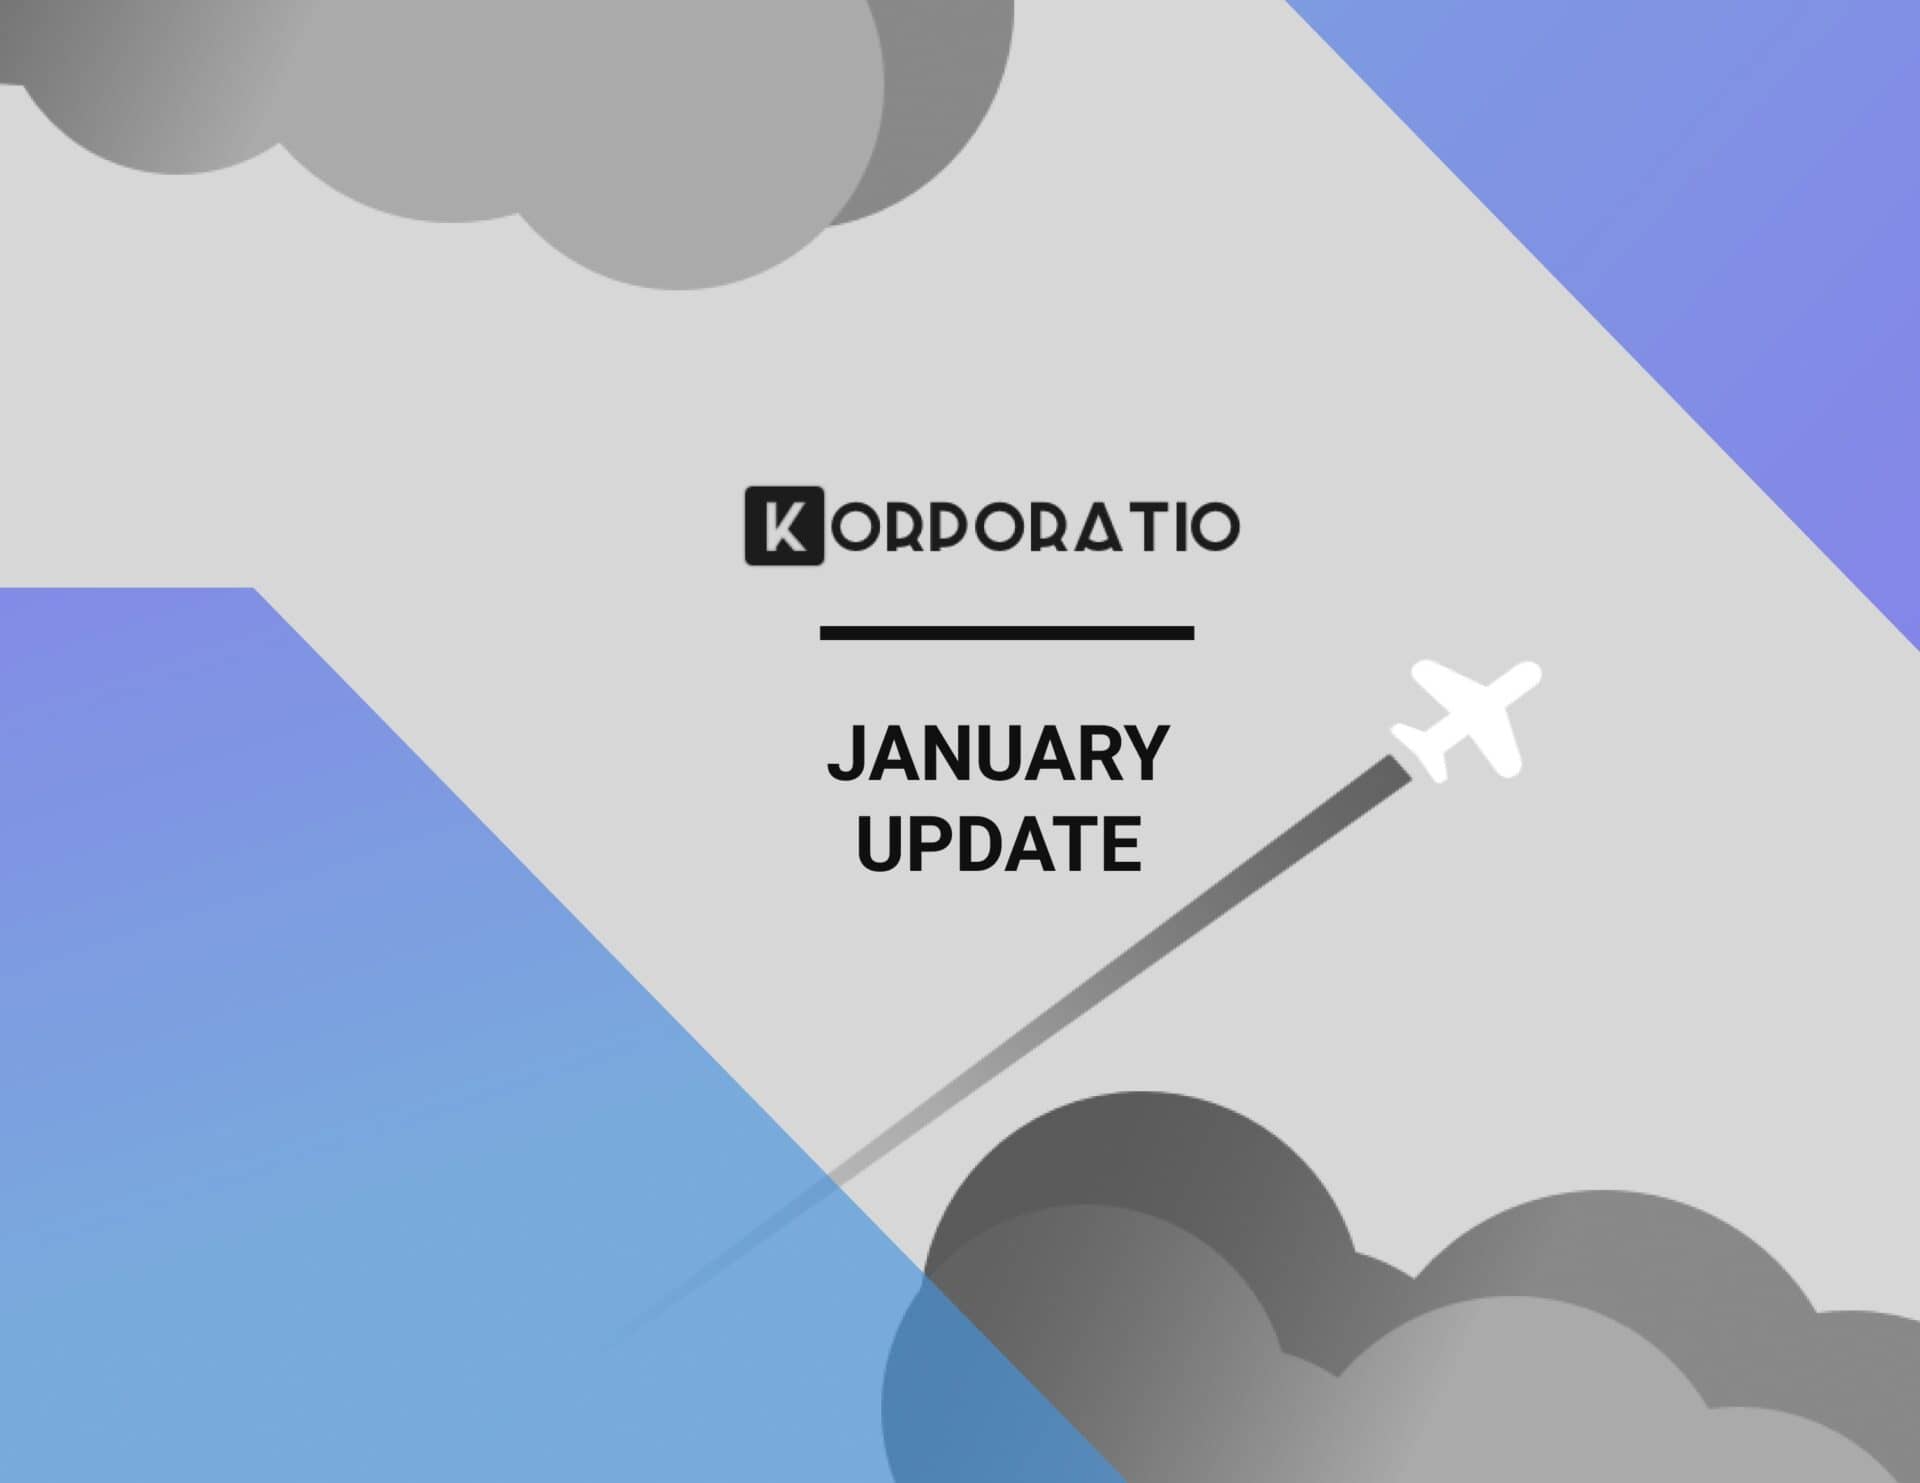 Korporatio January update